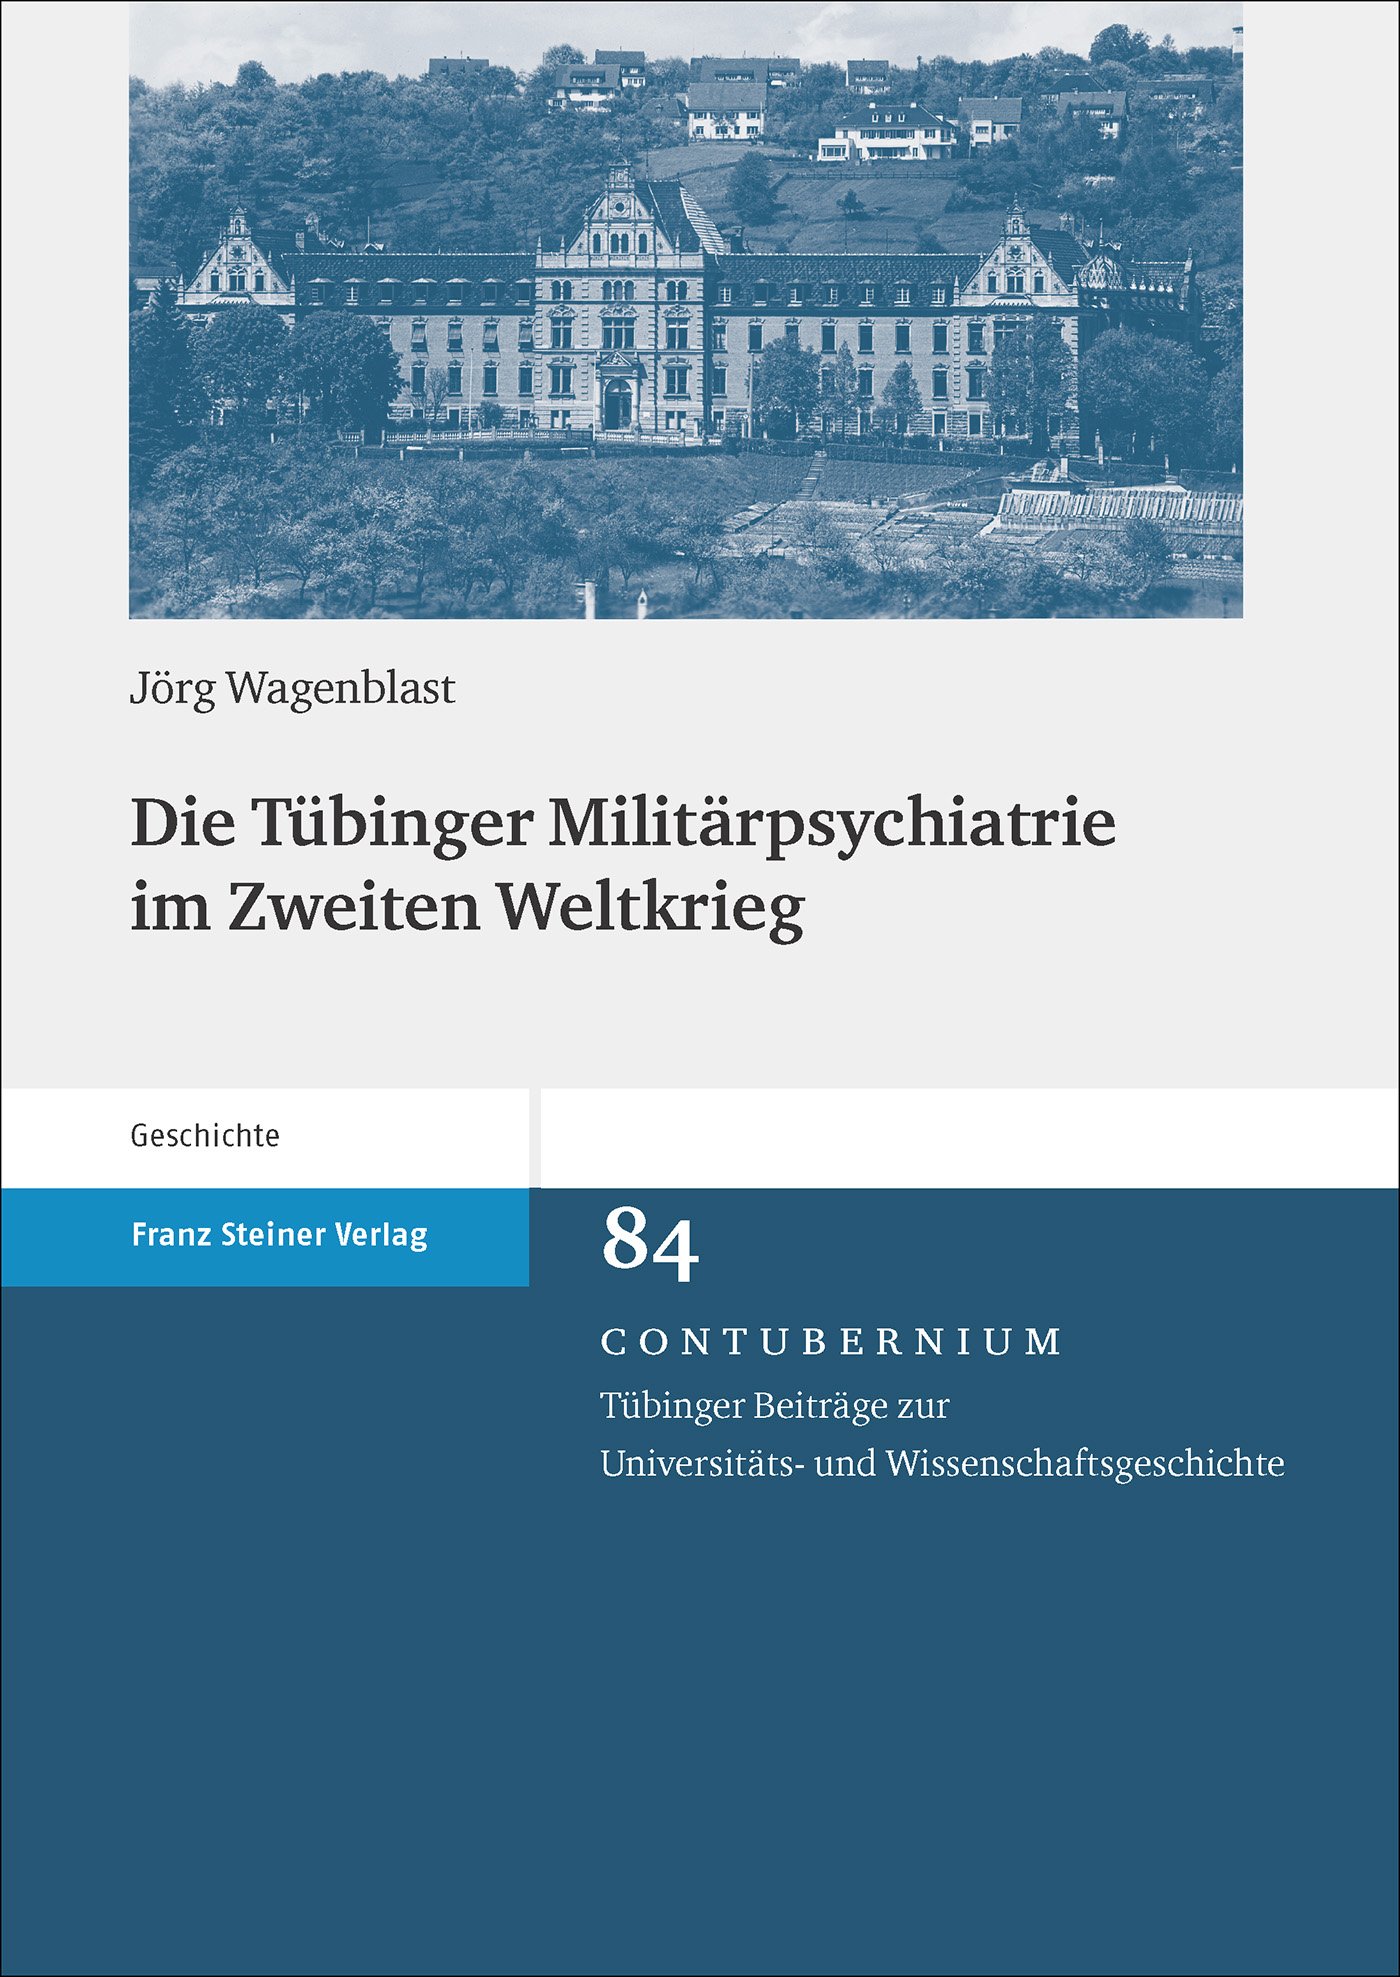 Die Tübinger Militärpsychiatrie im Zweiten Weltkrieg